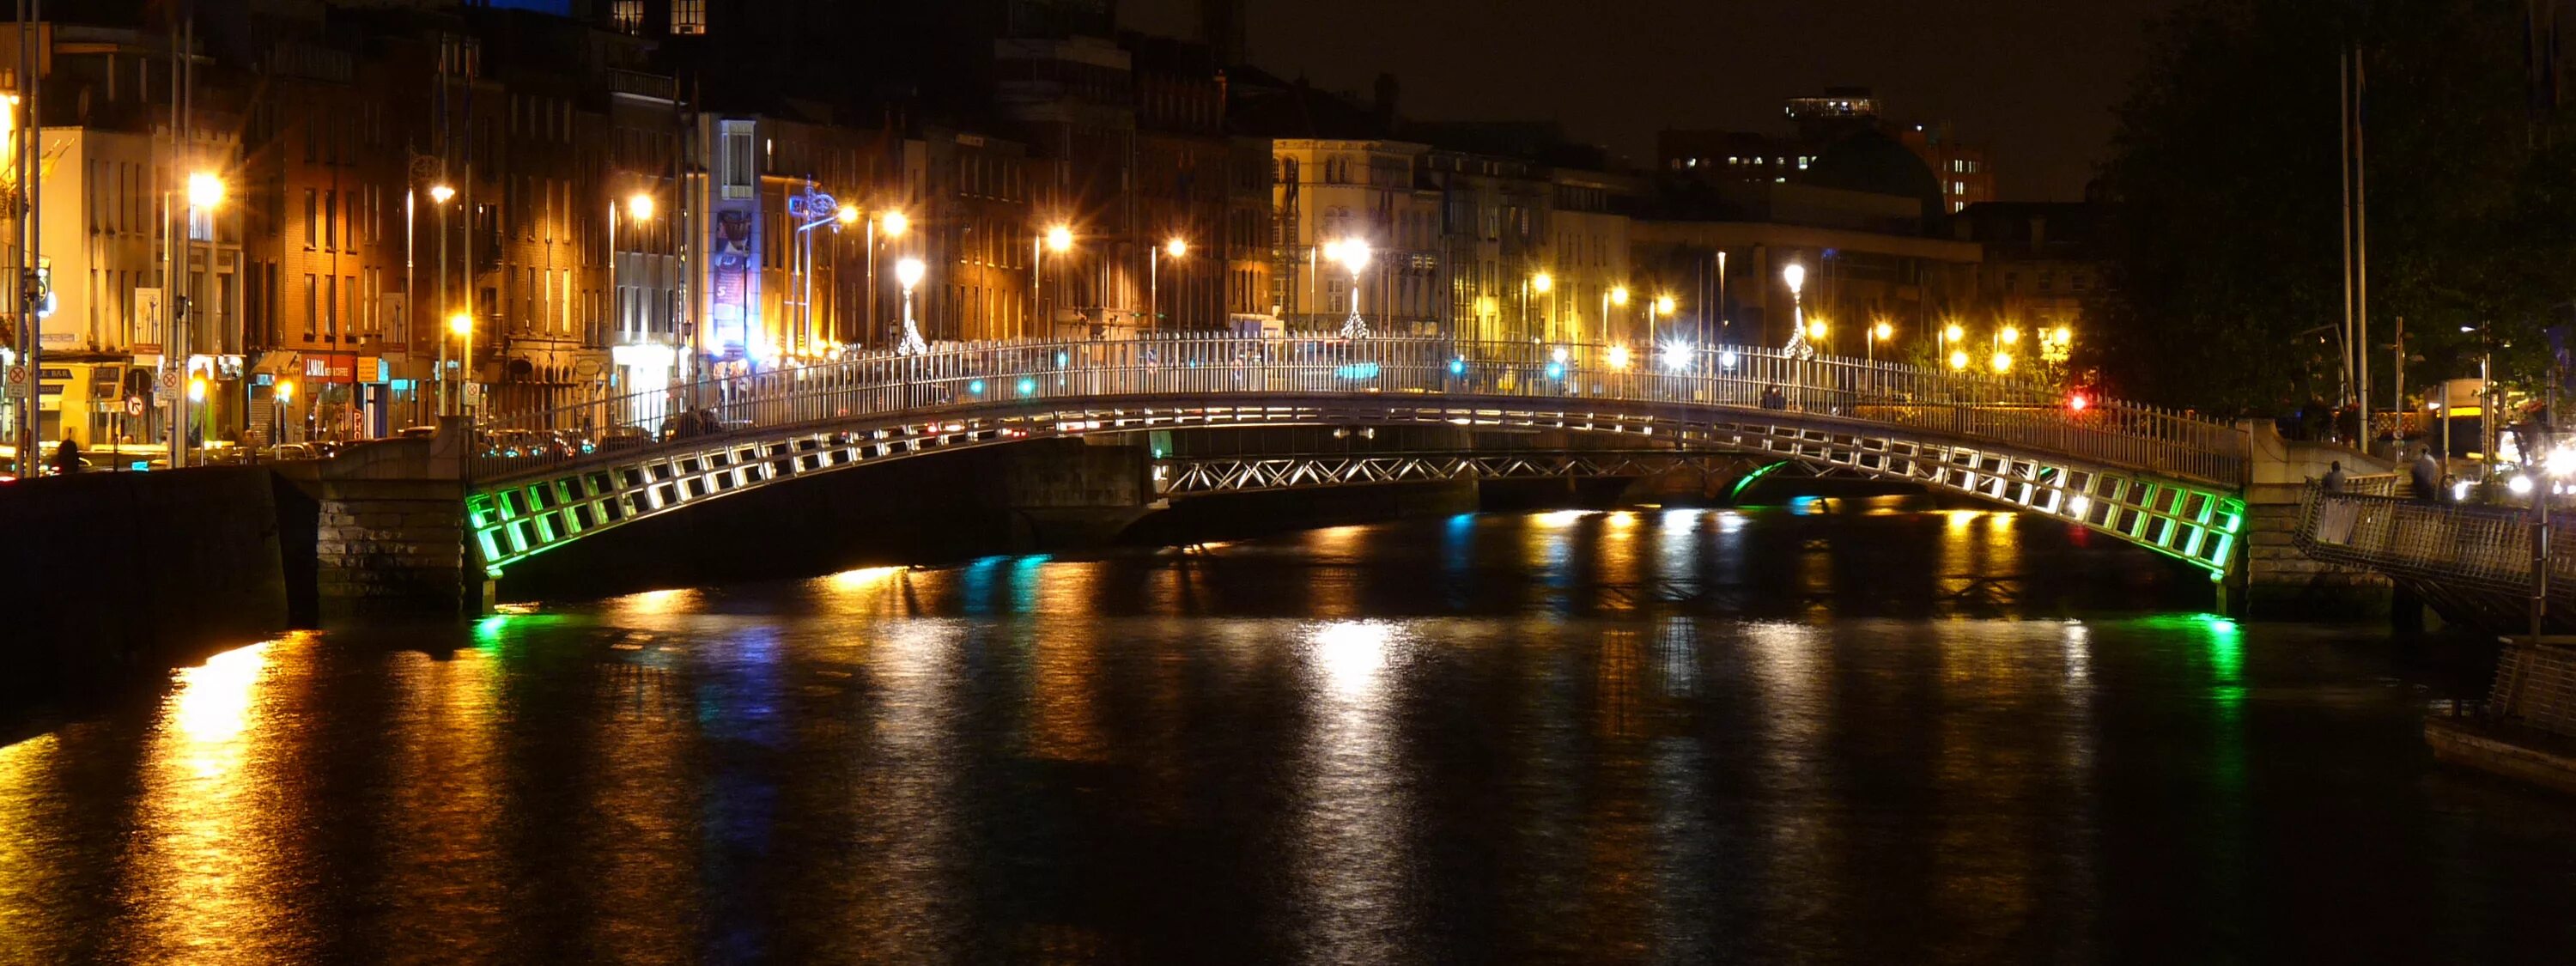 Каналу ночи видео. Дублин набережная. Мост в огне. Створные огни моста. Ирландия набережная.